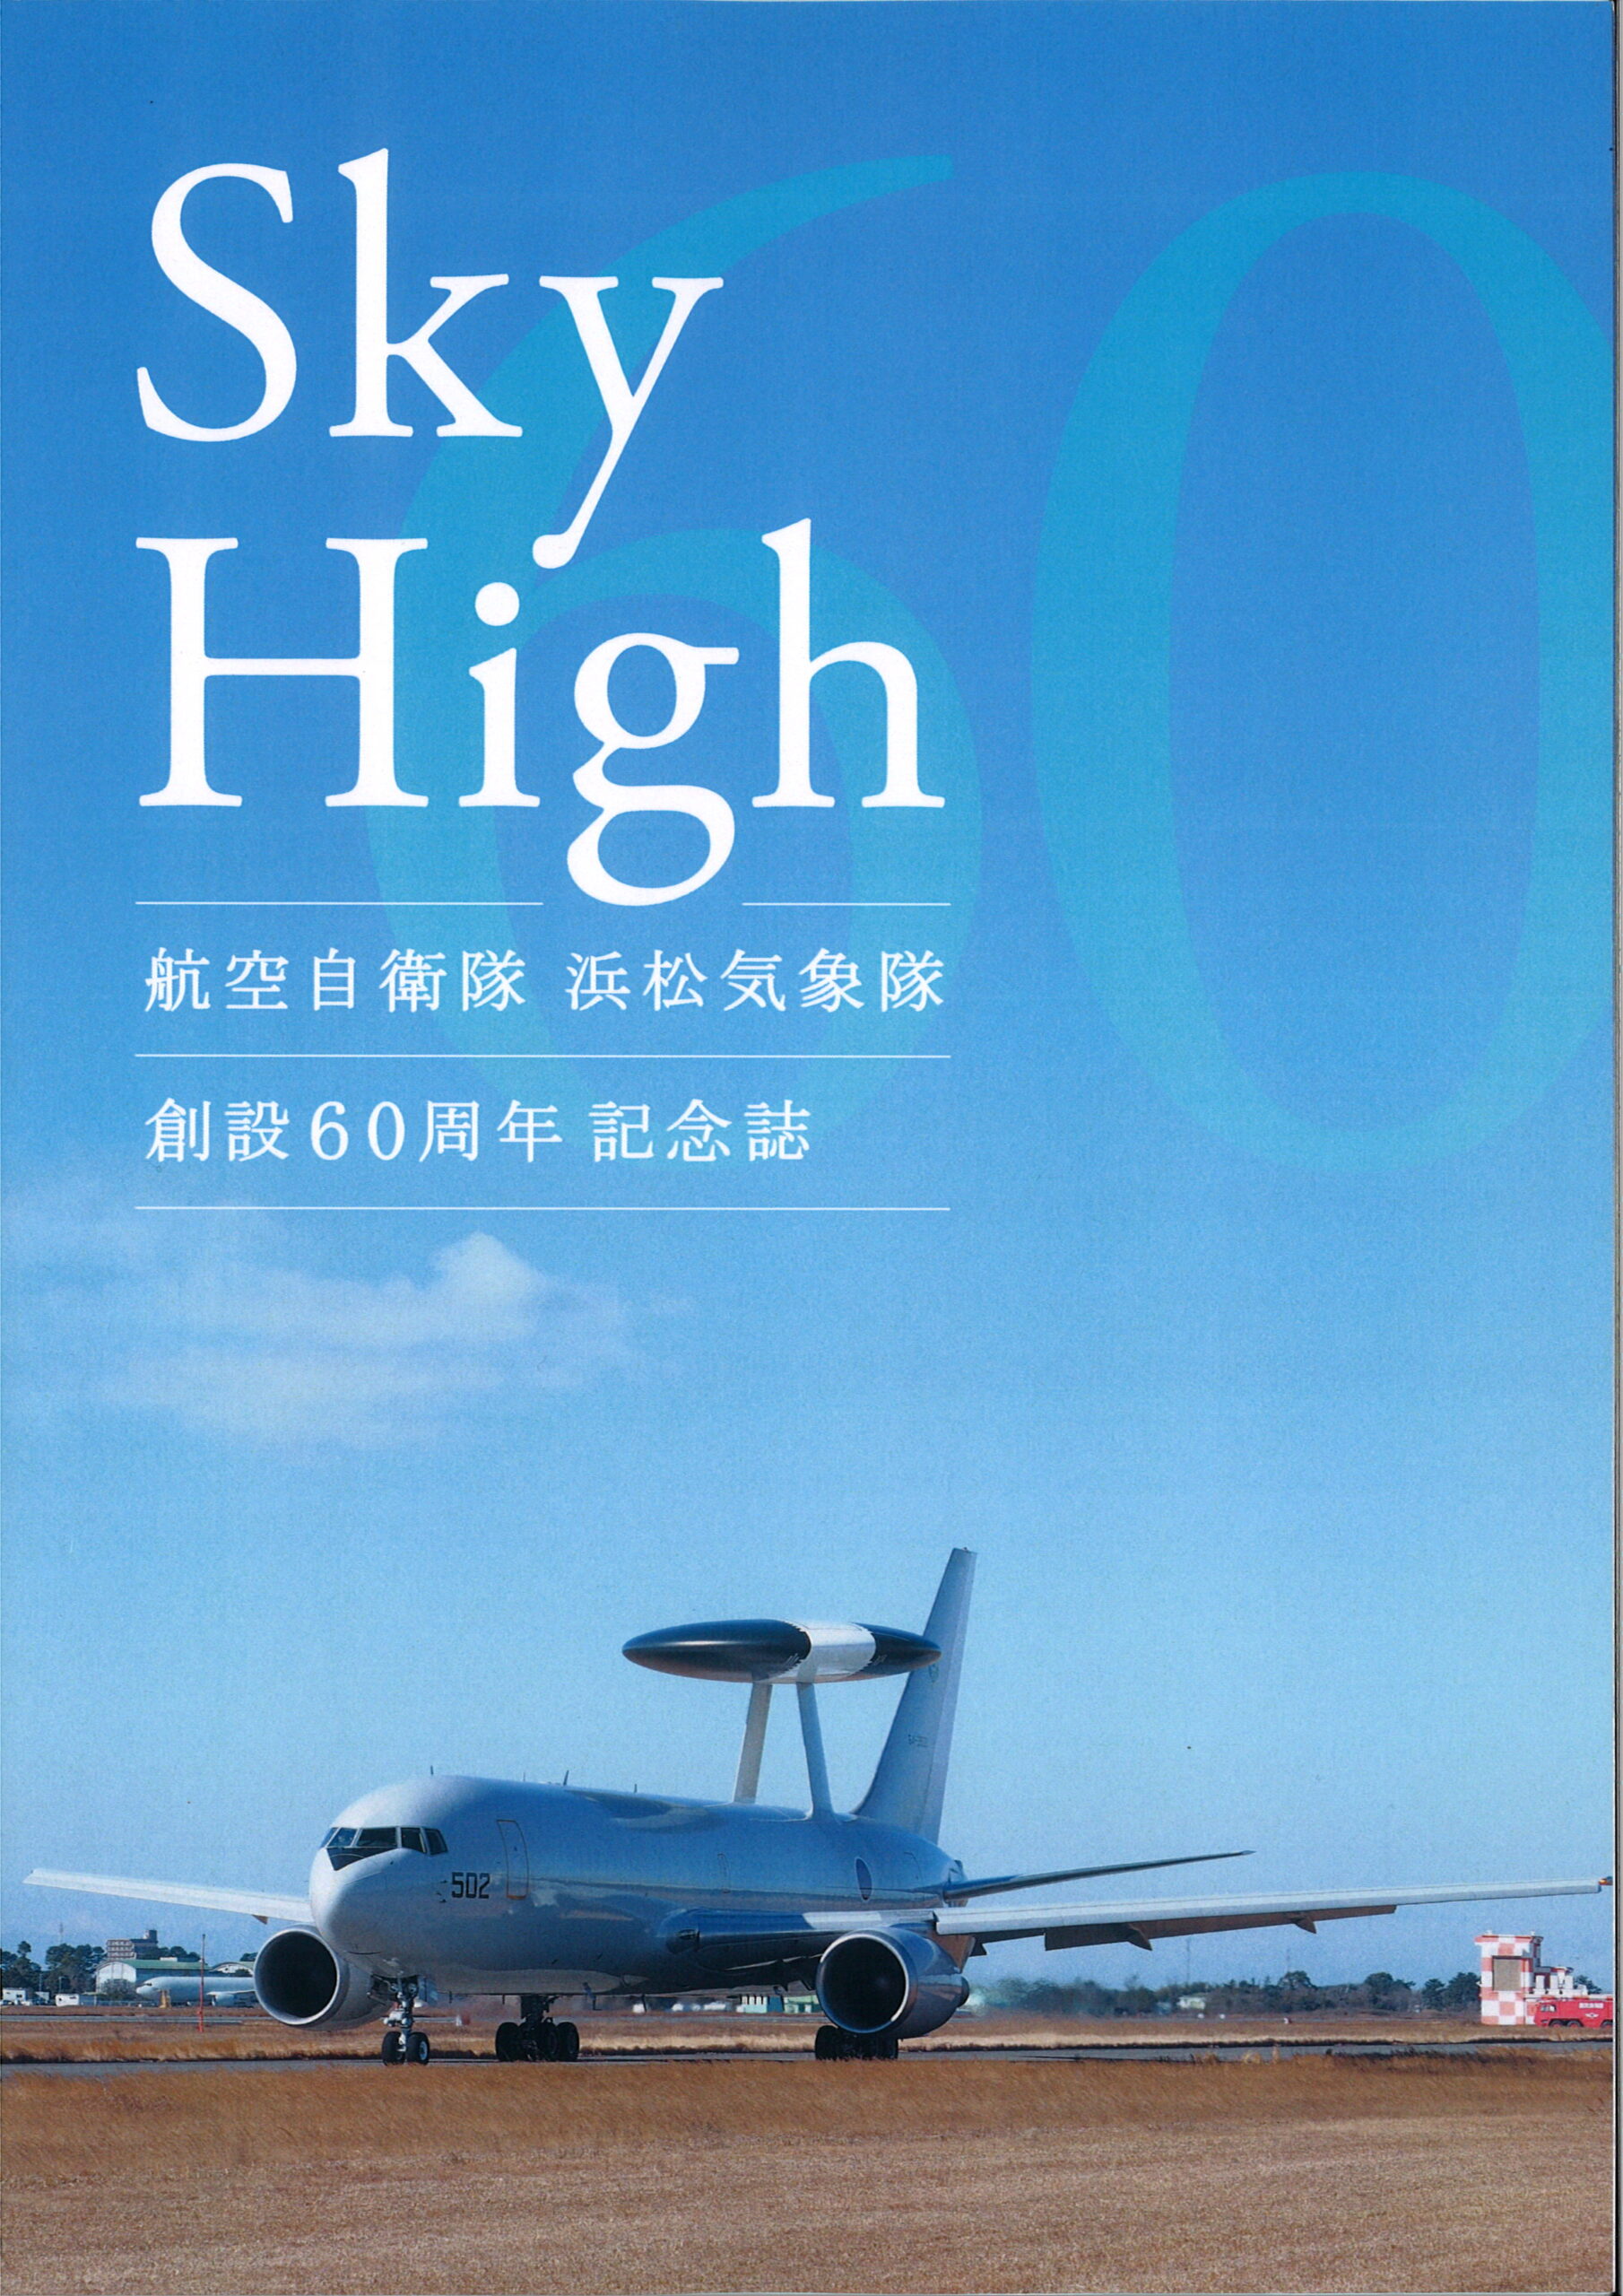 航空自衛隊 浜松気象隊 創設60周年記念誌  Sky High